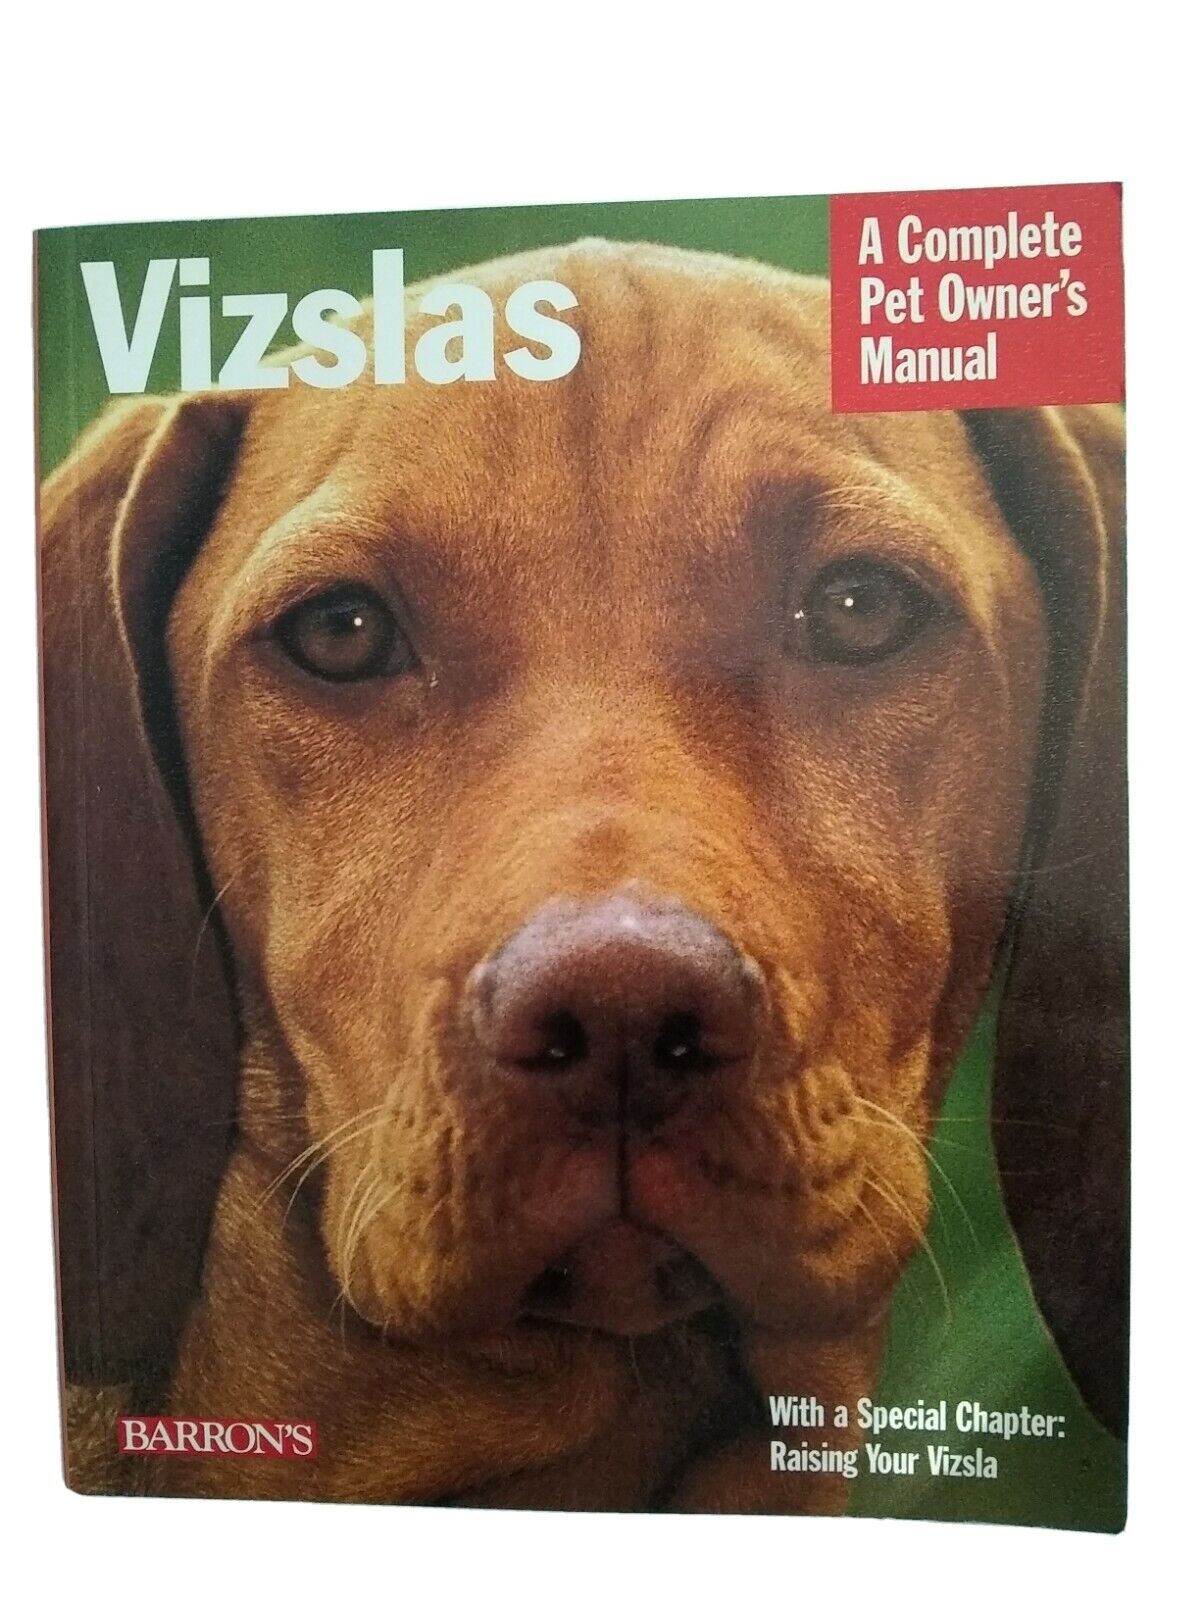 Vizslas Complete Pet Owner's Manual